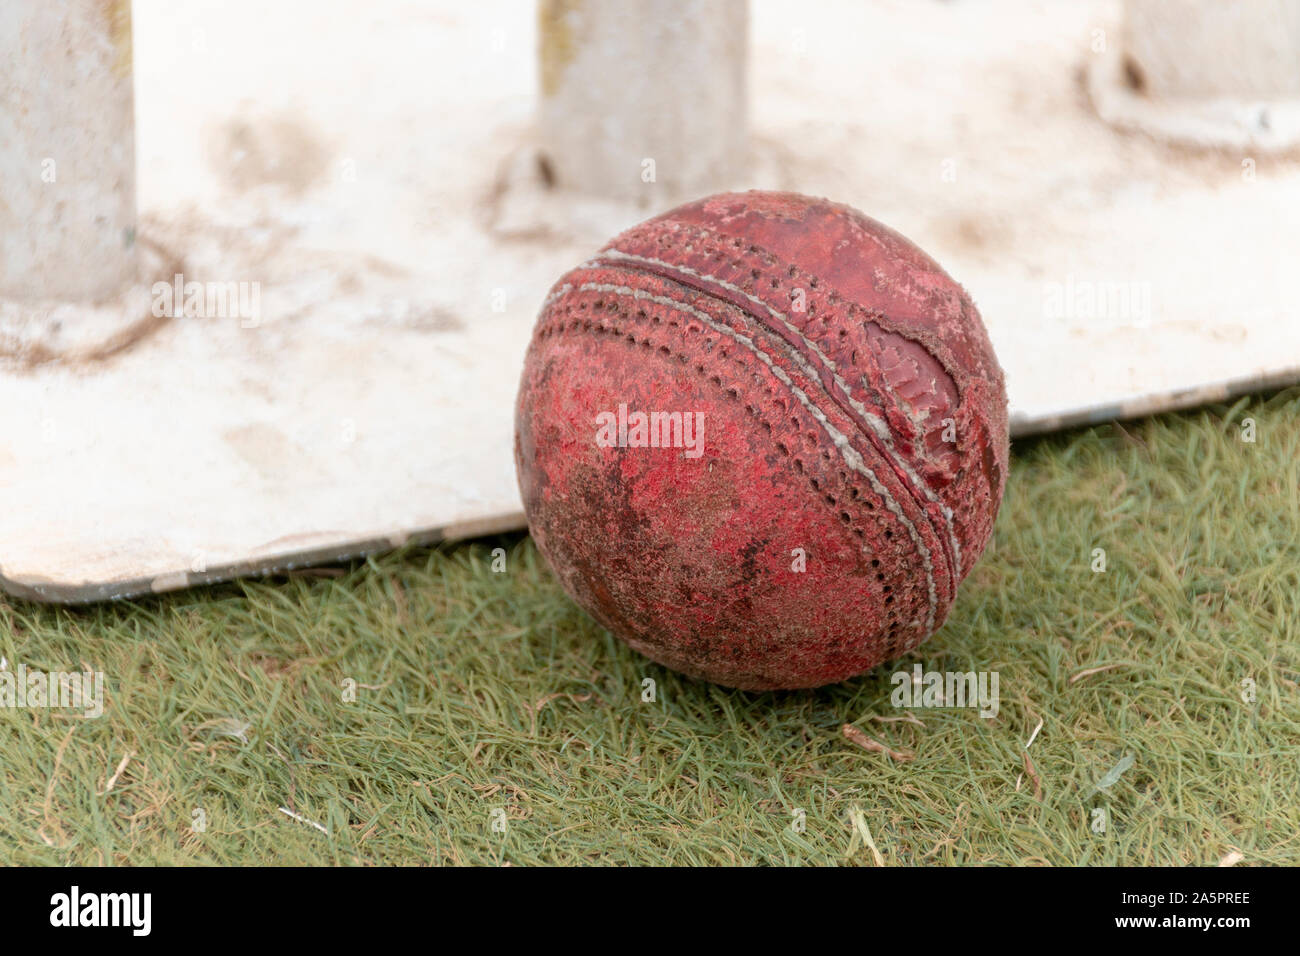 Eine Nahaufnahme von einem alten Brunnen verwendet Red cricket Ball auf einem Rasenplatz neben White Metal Wickets Stockfoto